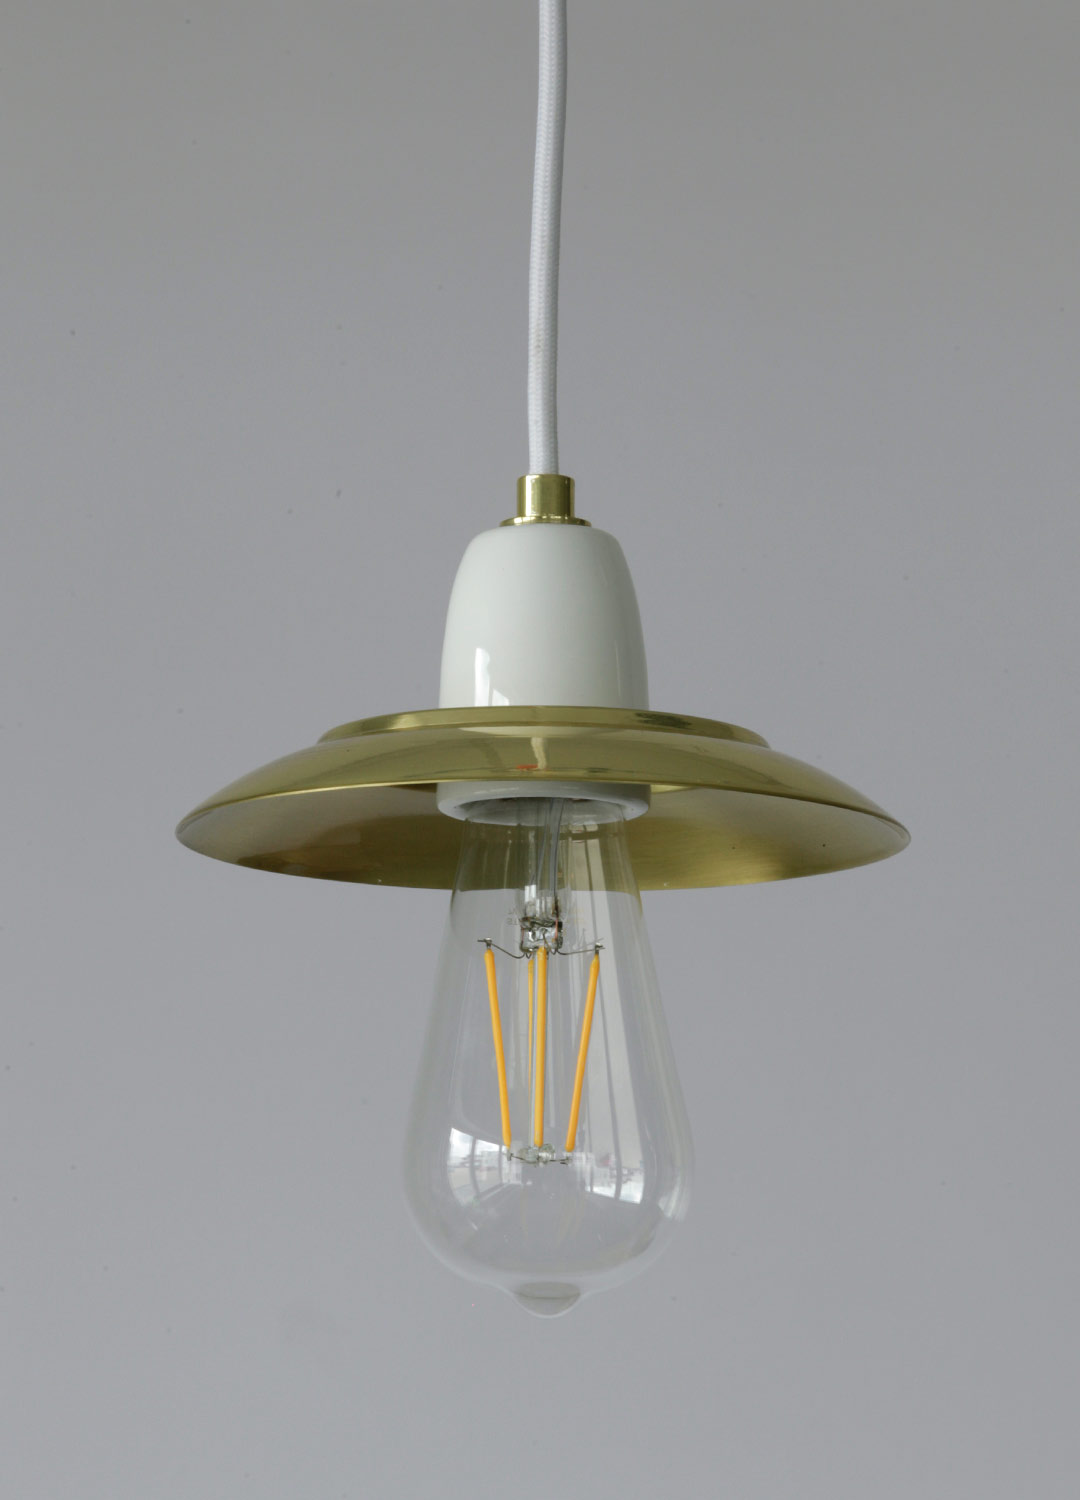 Moderne Fassungs-Hängeleuchte mit kleinem Schirm: Die kleine Pendelleuchte mit Keramikfassung ist prädestiniert für dekorative „Edison“-Glühbirnen